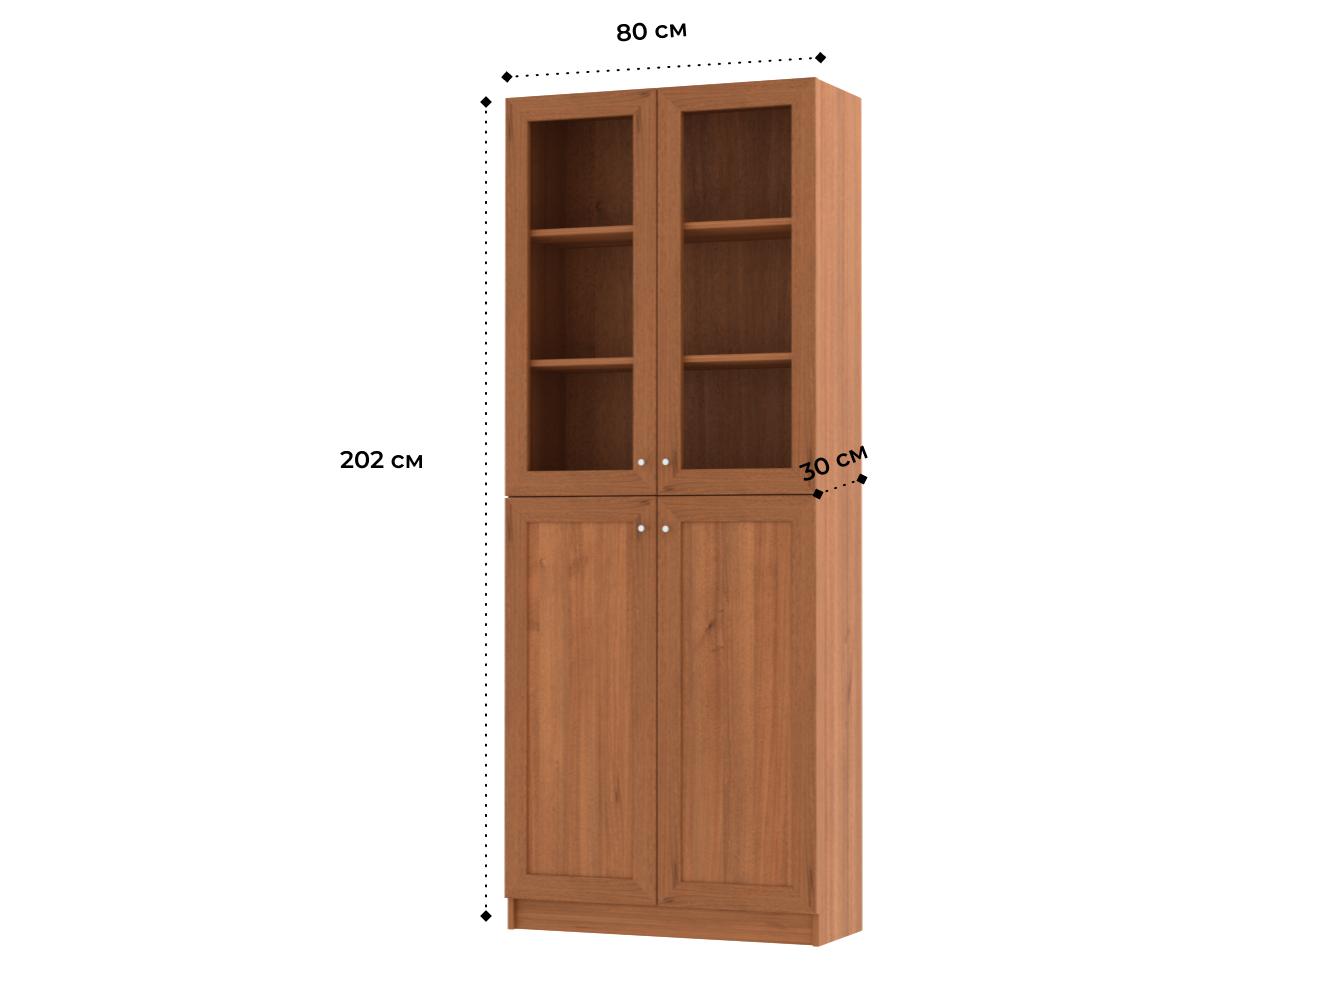 Изображение товара Книжный шкаф Билли 18 walnut guarneri ИКЕА (IKEA), 80x30x202 см на сайте adeta.ru